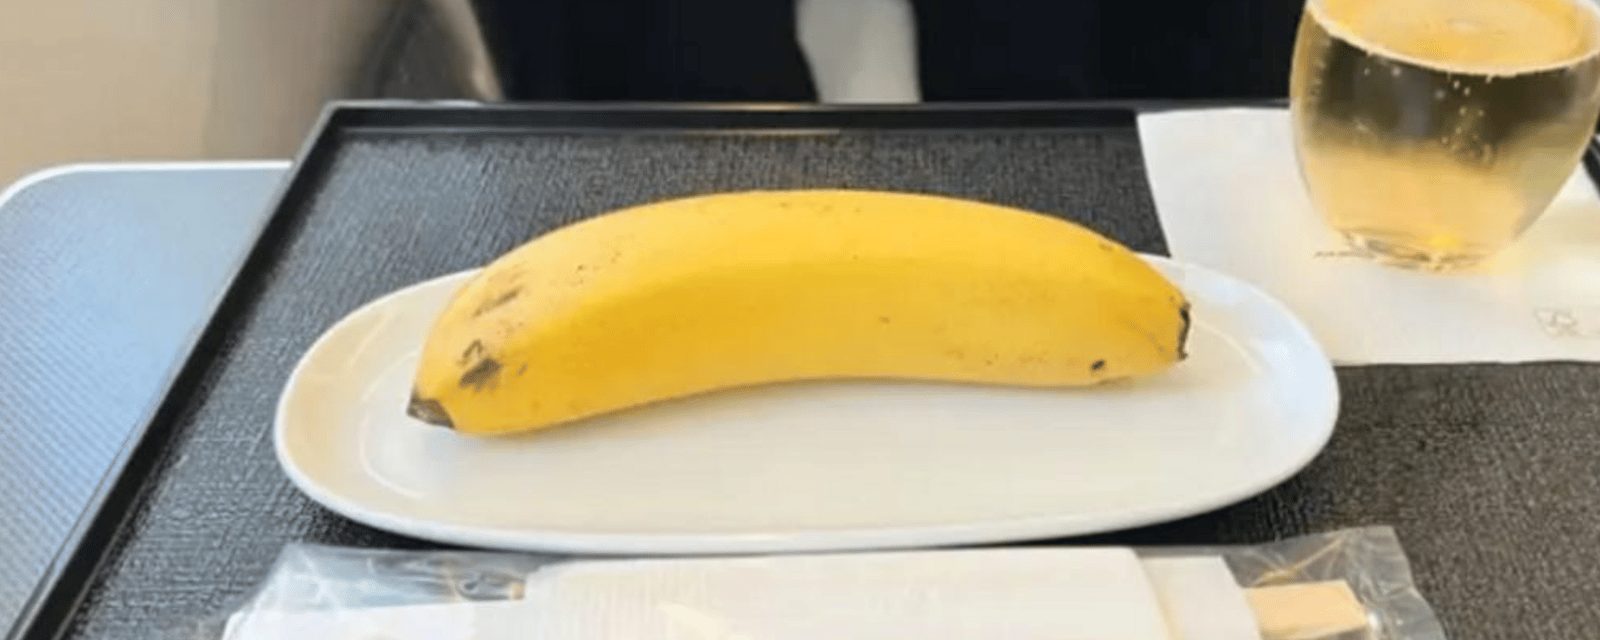 Un homme insulté alors qu'il affirme qu'on lui a servi une banane lorsqu'il a demandé un repas vegan